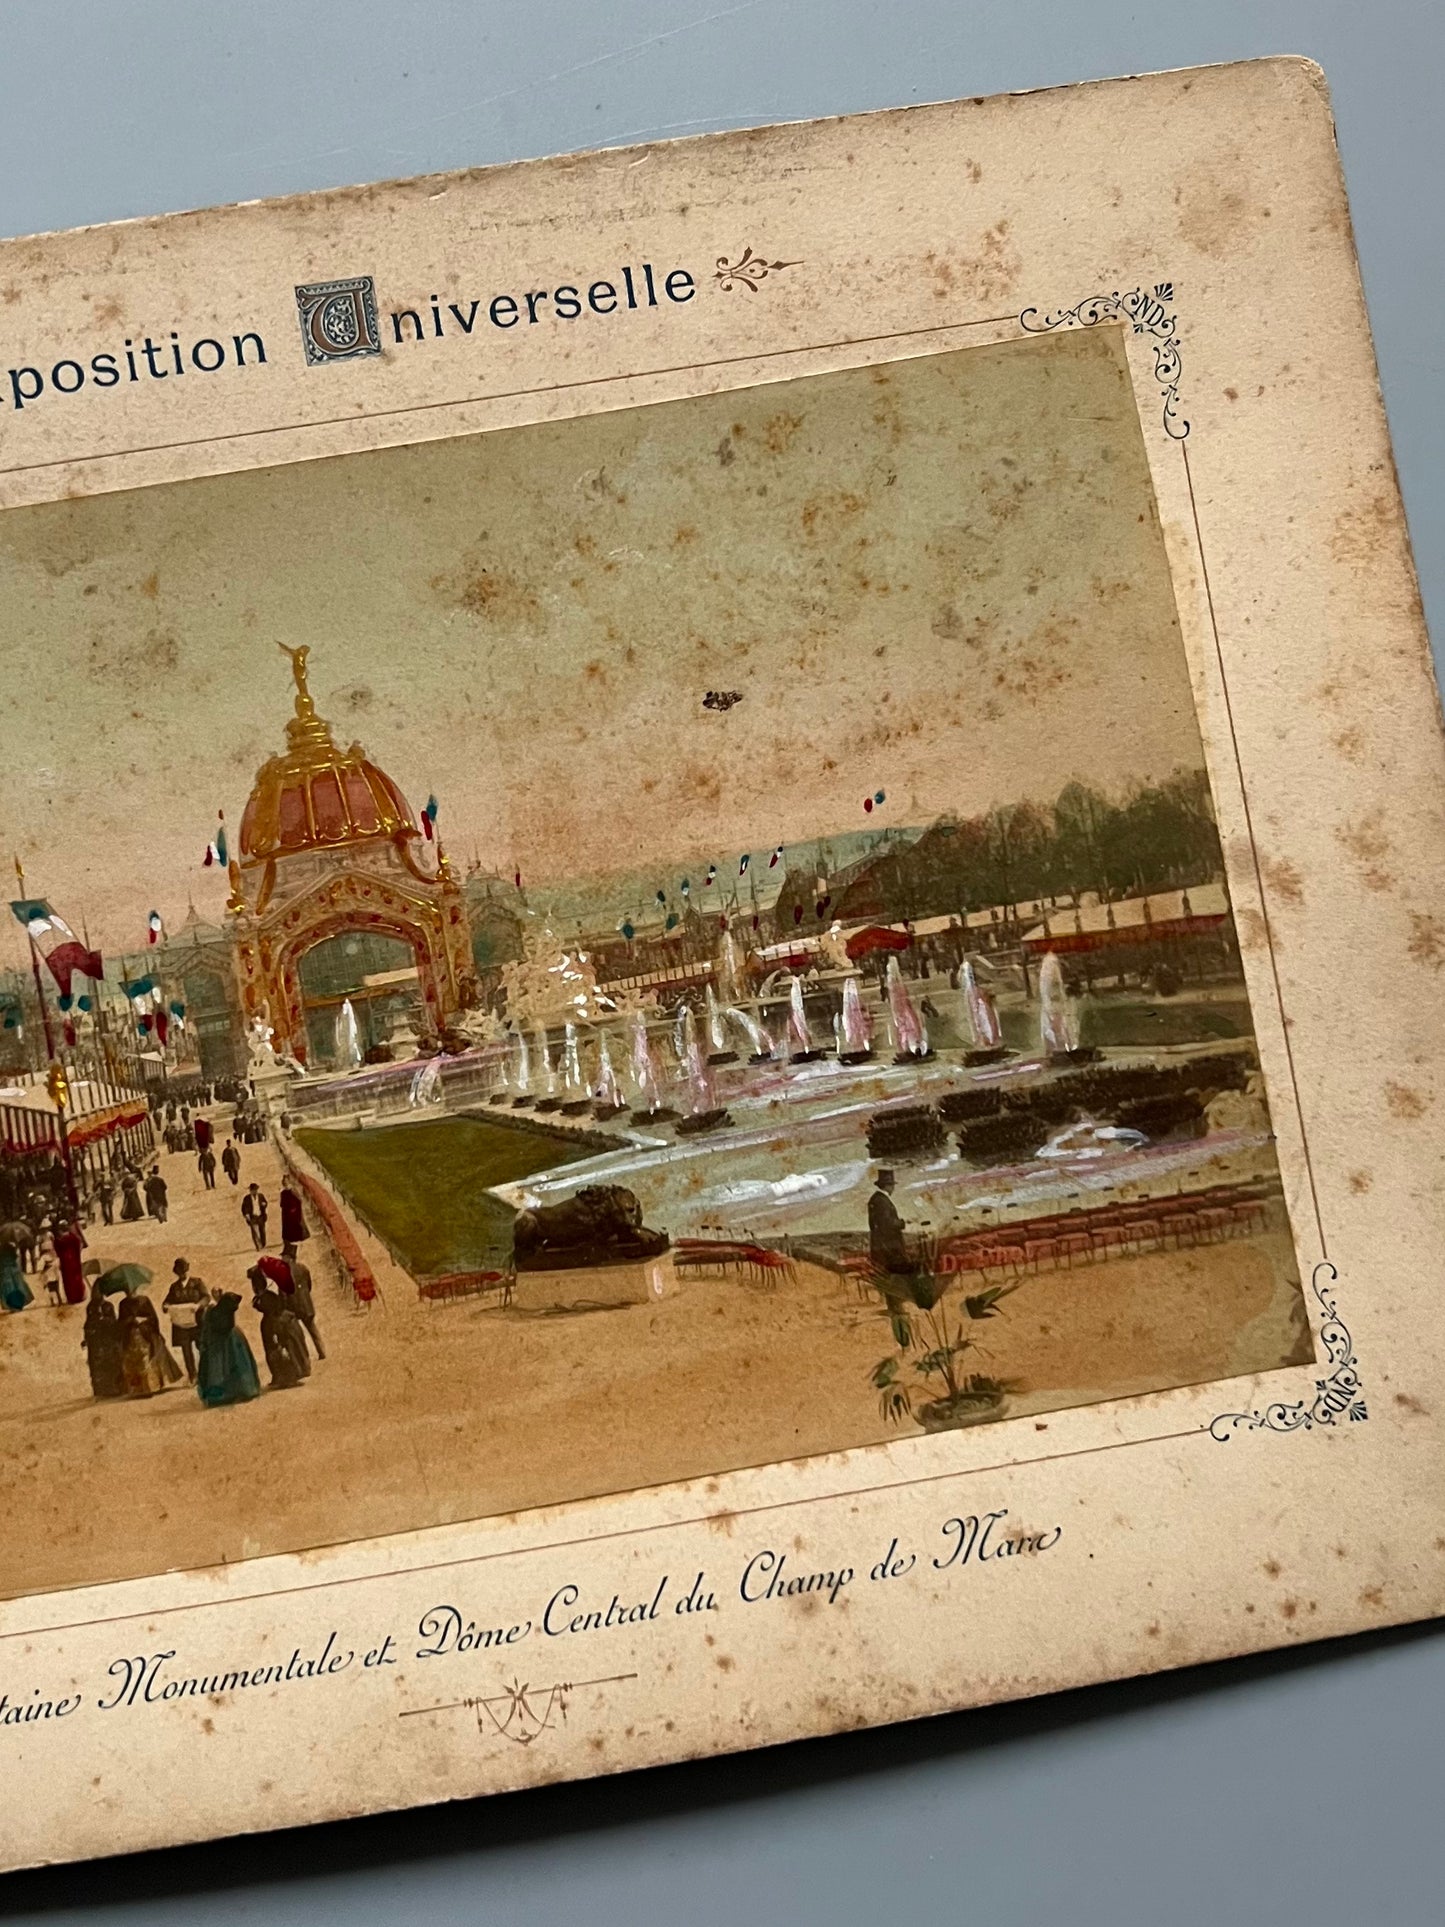 Albúmina de la Exposición Universal de París de 1889 - "Fontaine Monumentale et Dôme Central du Champ de Mars"